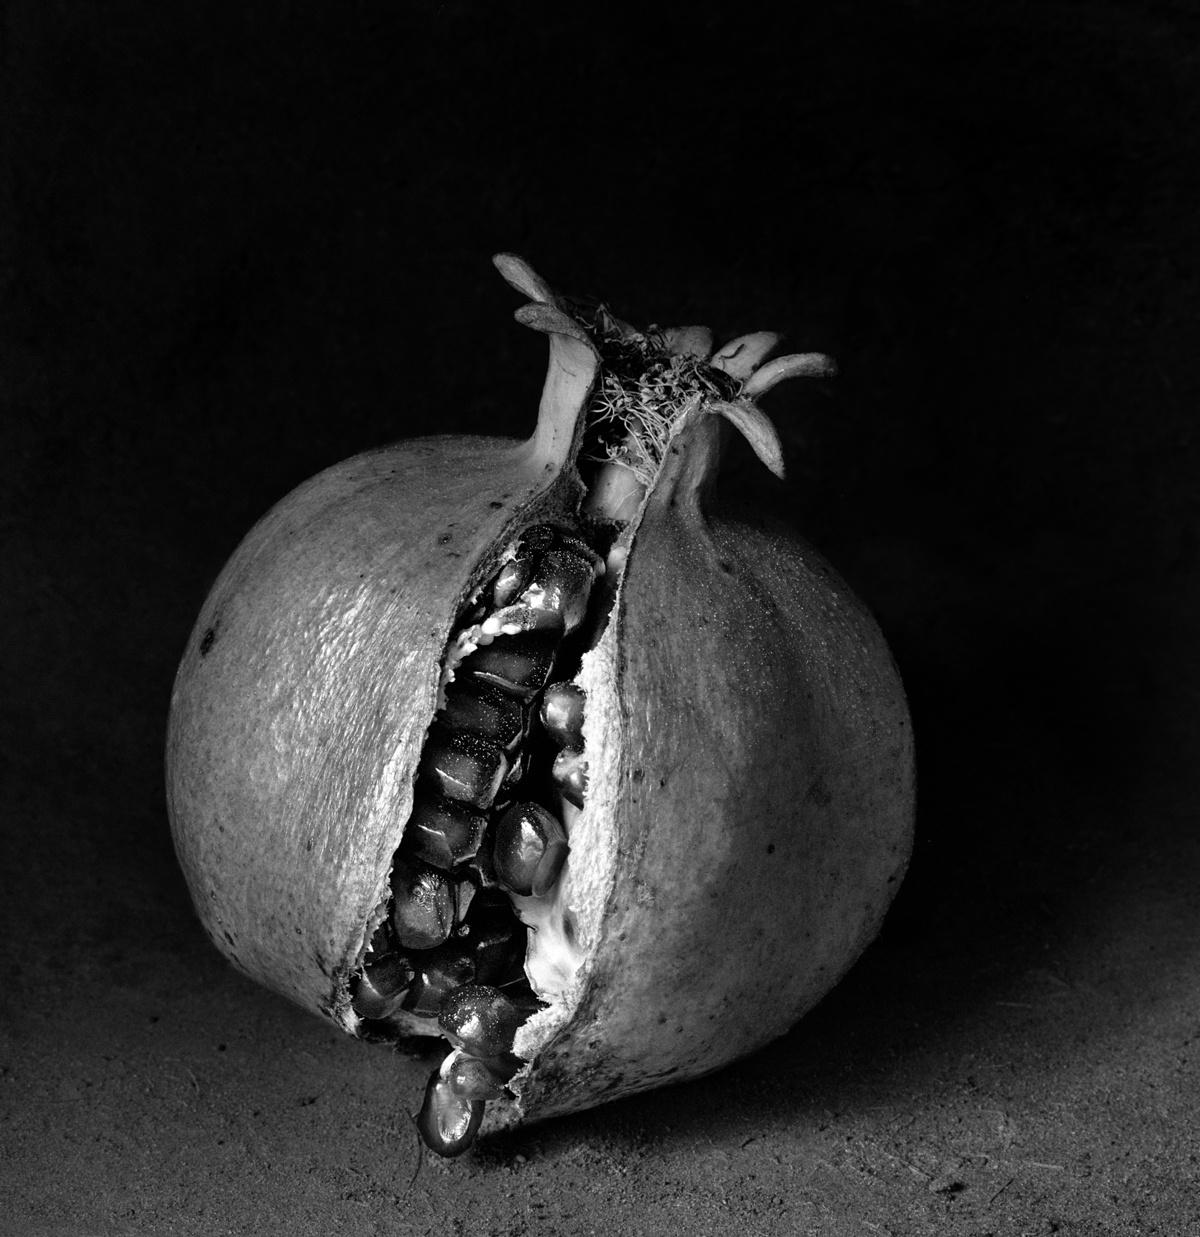 Con Corona, Mexico, 2000 - Flor Garduño (Black and White Photography)